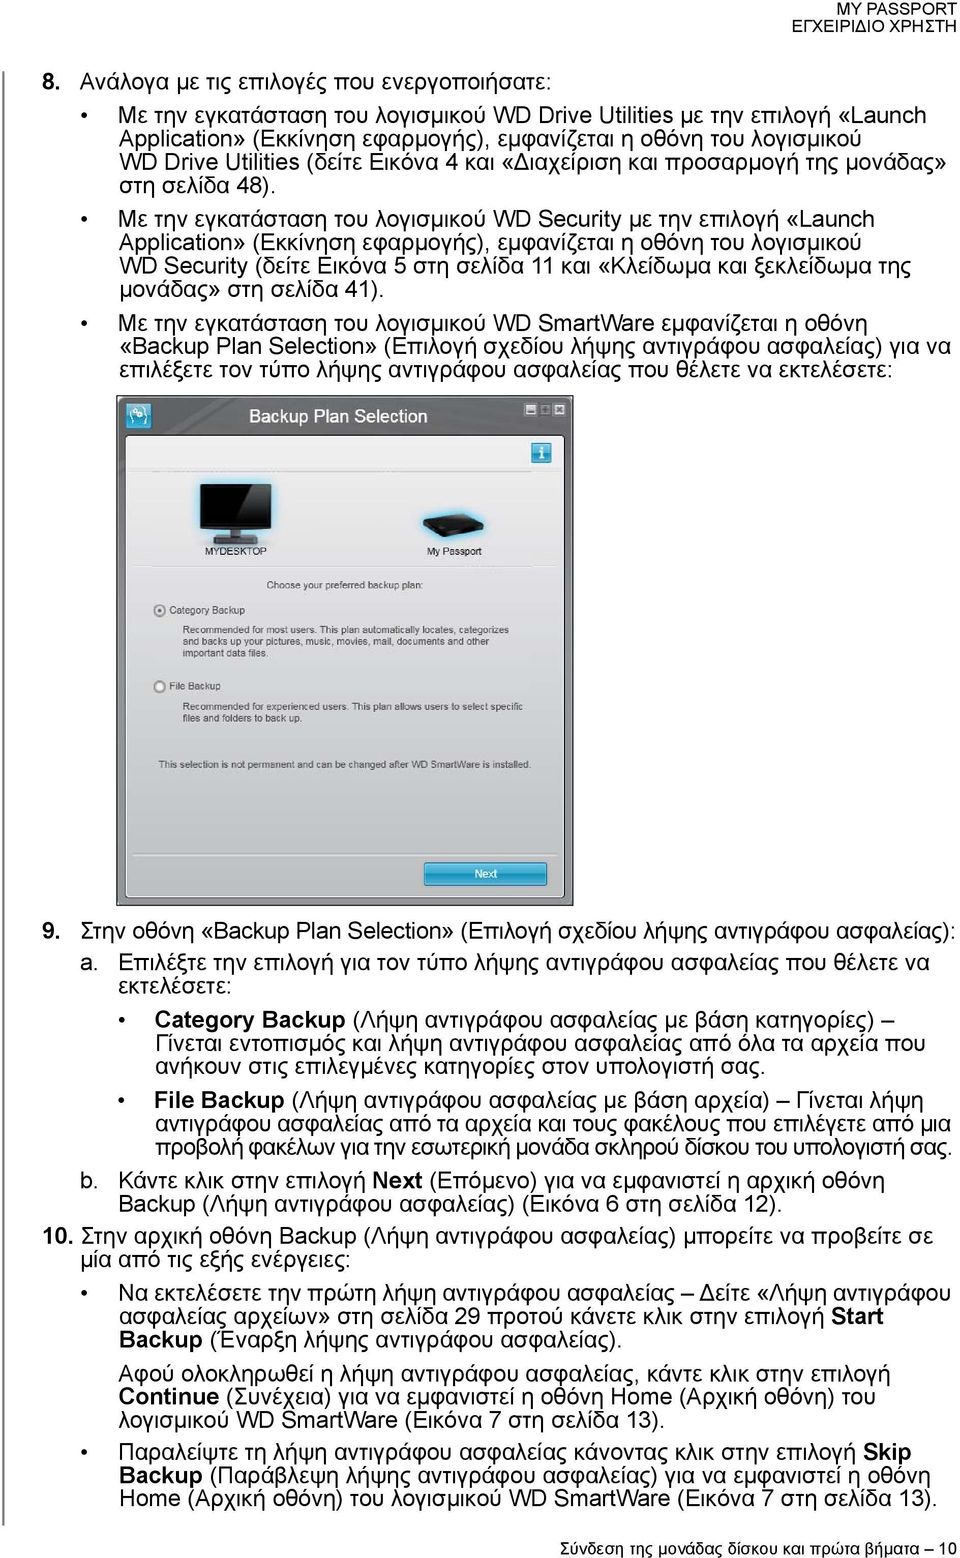 Με την εγκατάσταση του λογισμικού WD Security με την επιλογή «Launch Application» (Εκκίνηση εφαρμογής), εμφανίζεται η οθόνη του λογισμικού WD Security (δείτε Εικόνα 5 στη σελίδα 11 και «Κλείδωμα και